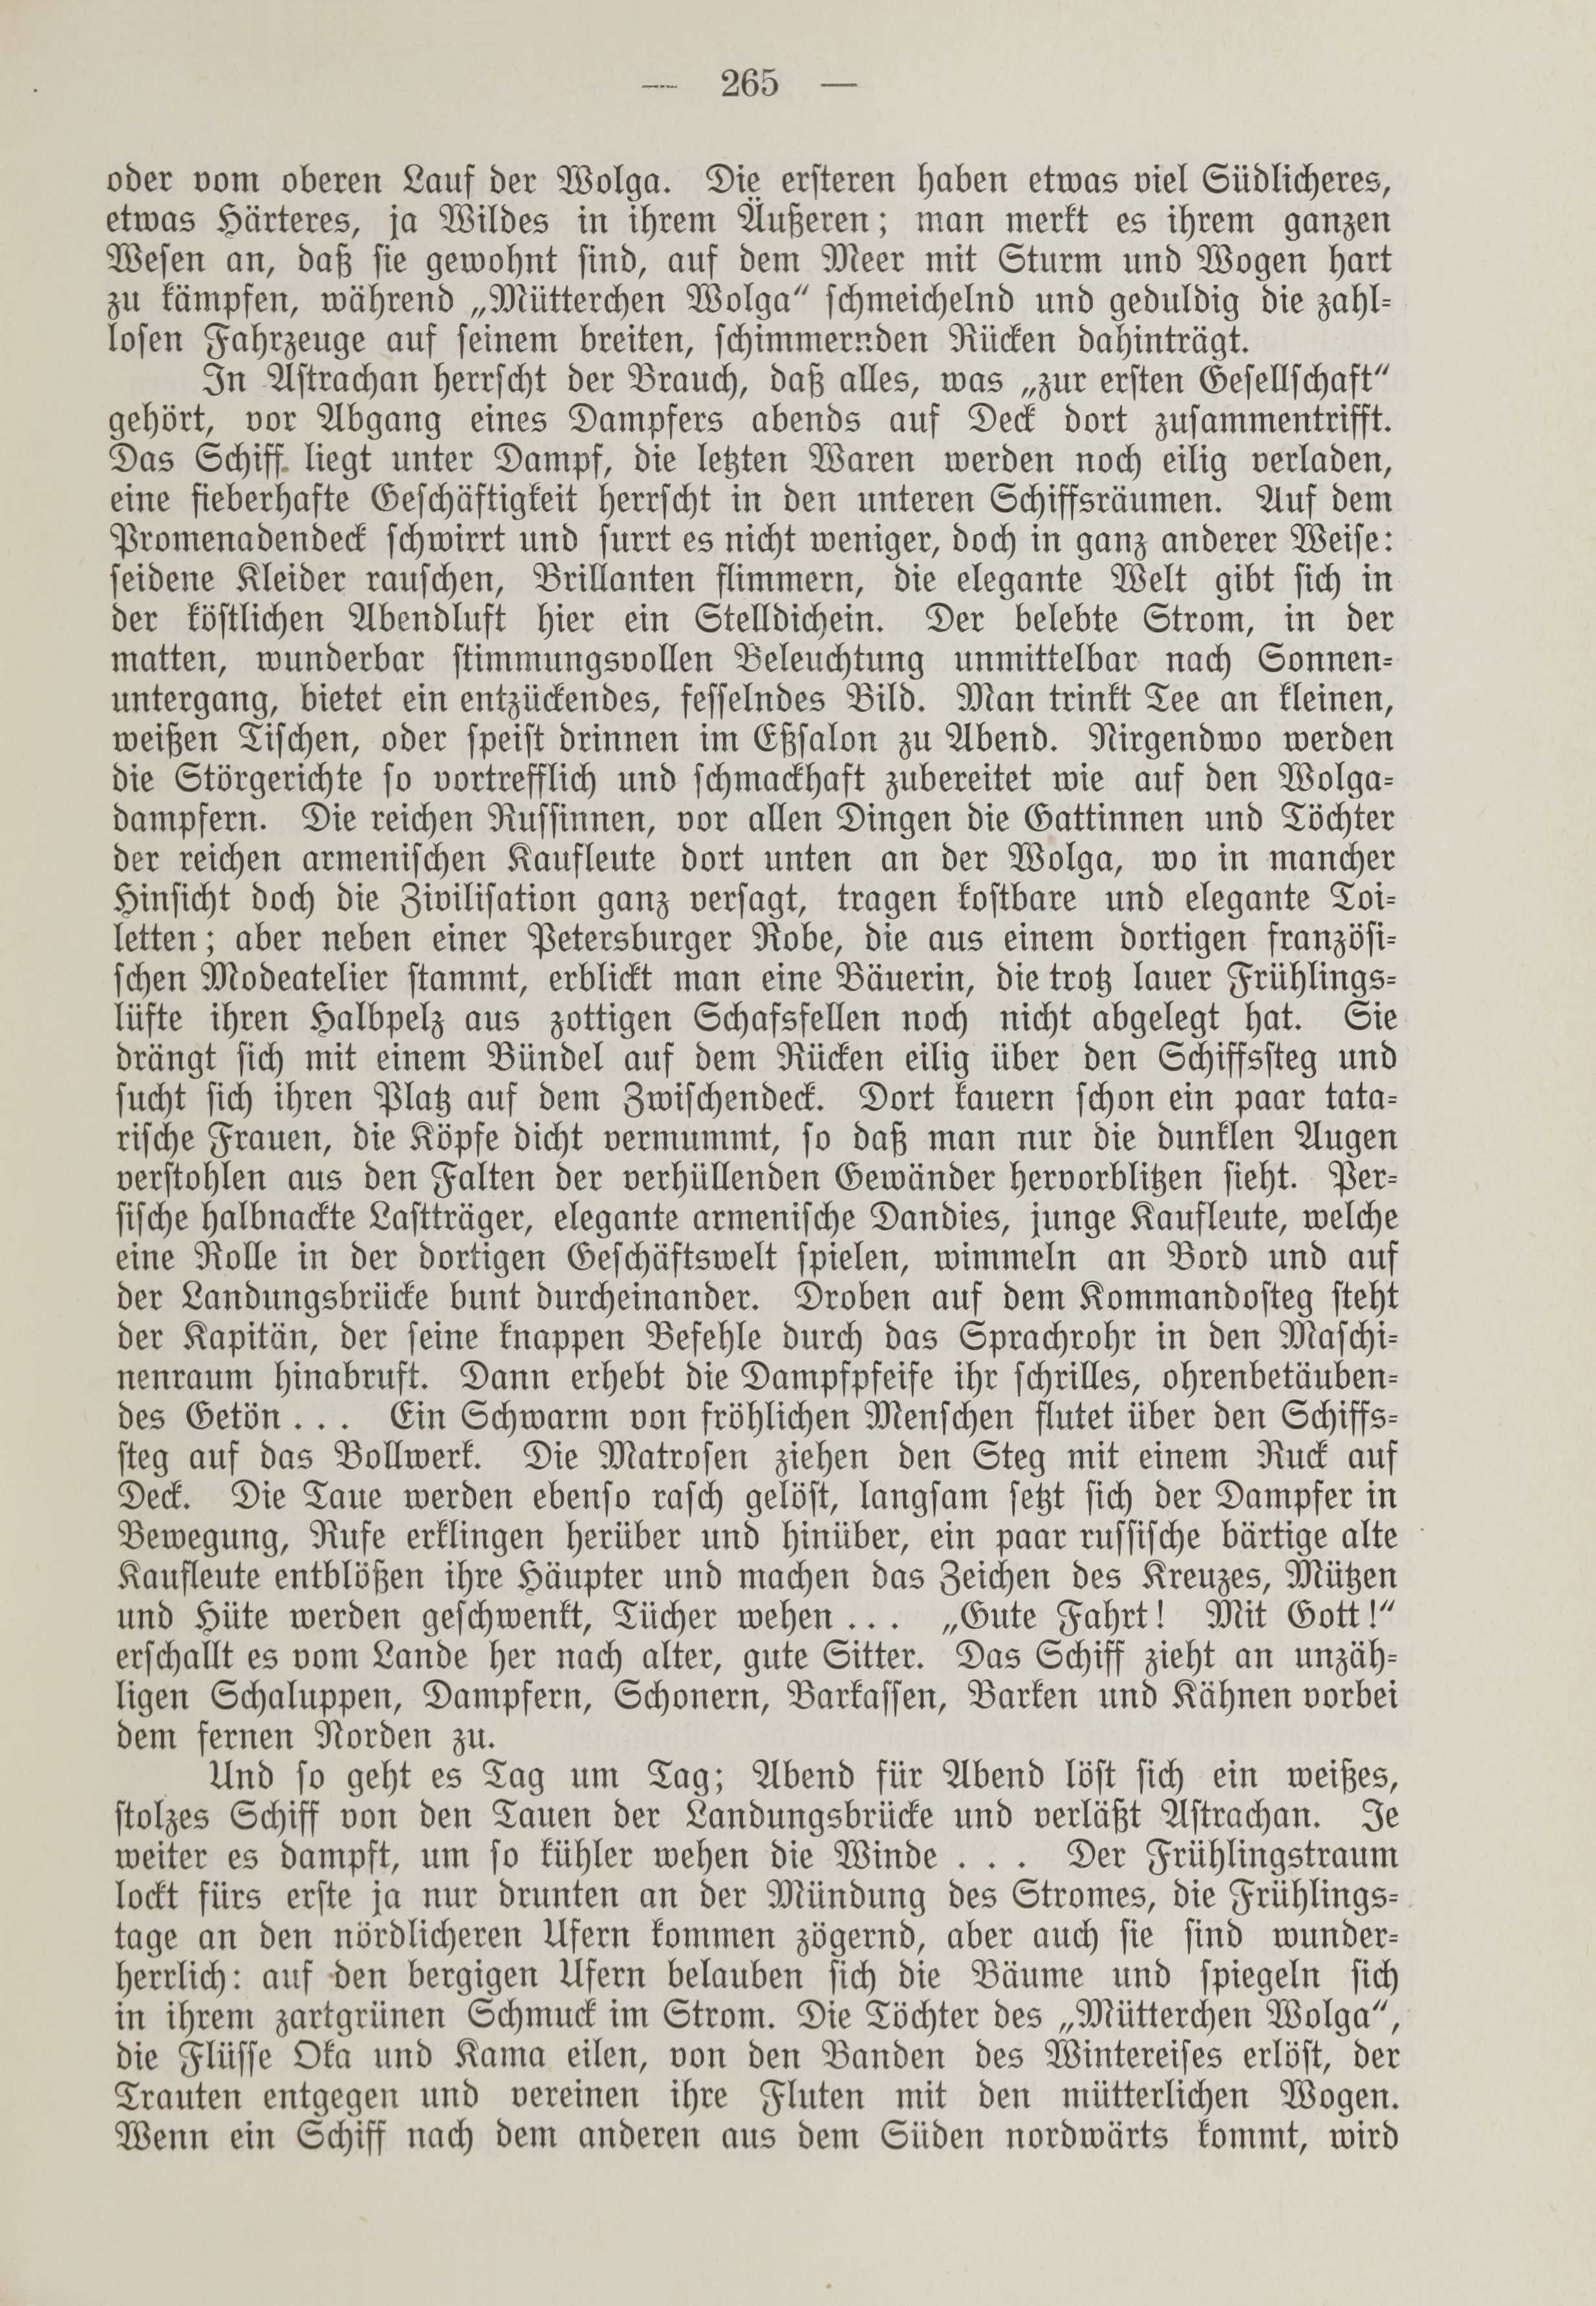 Deutsche Monatsschrift für Russland [1] (1912) | 273. (265) Main body of text